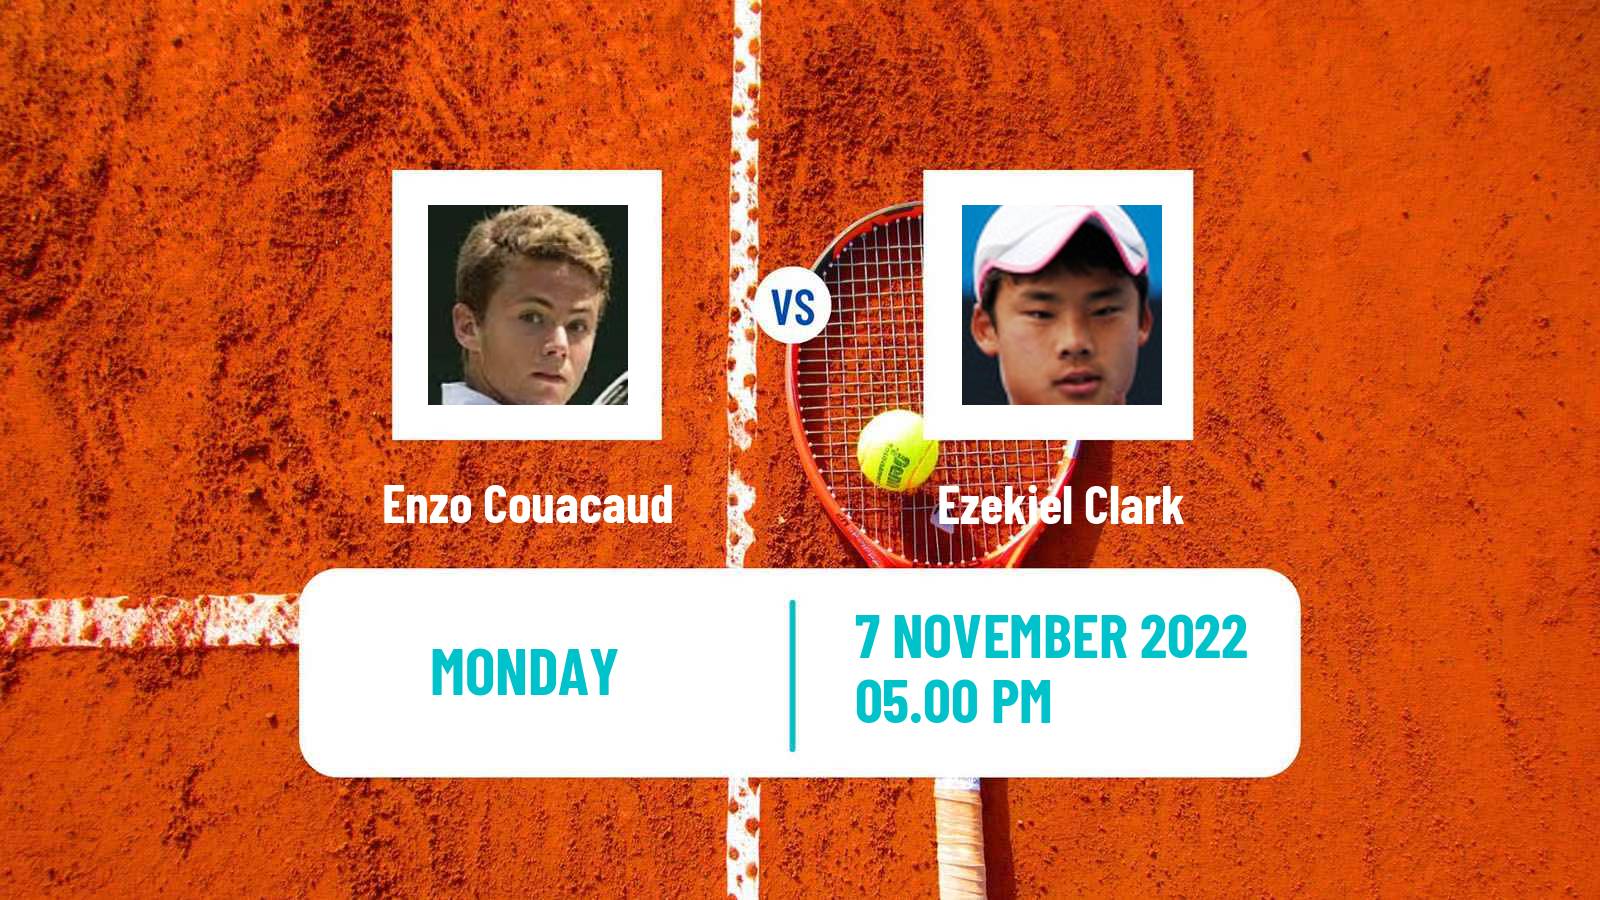 Tennis ATP Challenger Enzo Couacaud - Ezekiel Clark